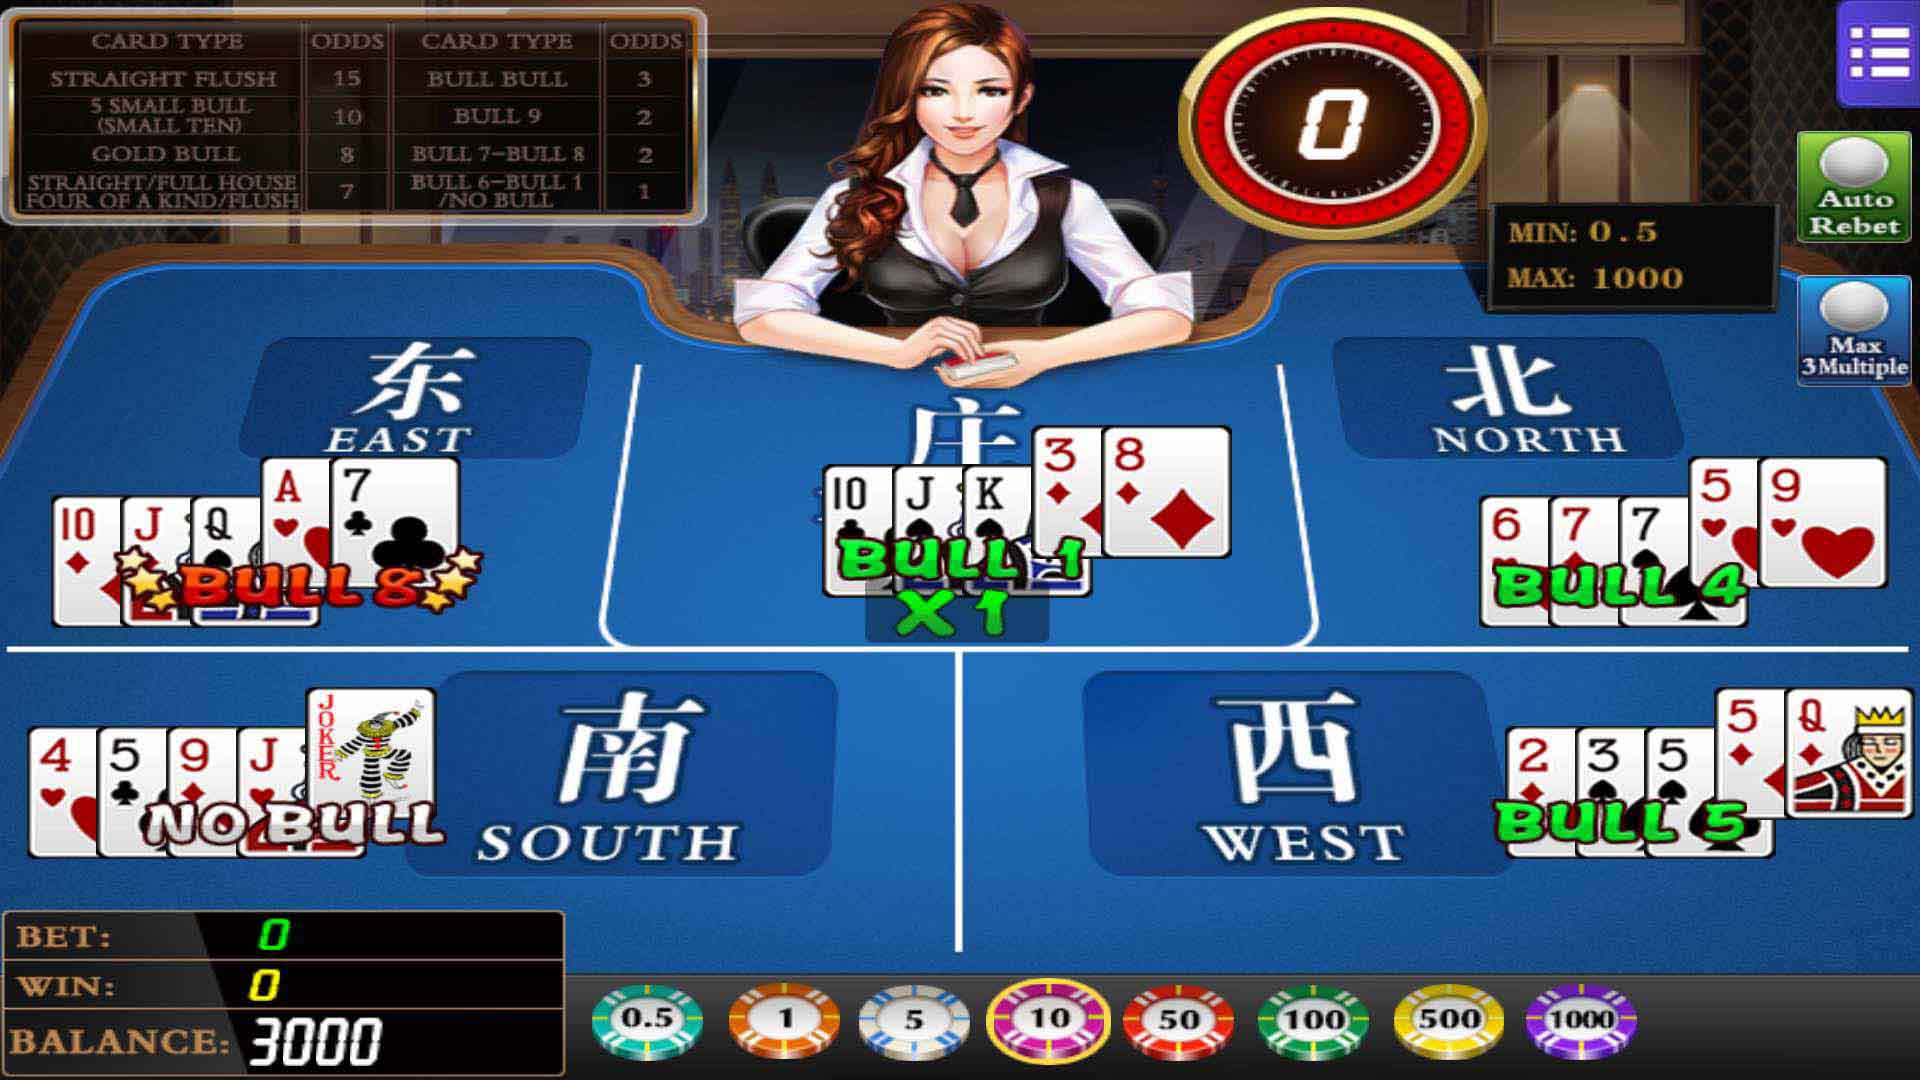 mega888 casino